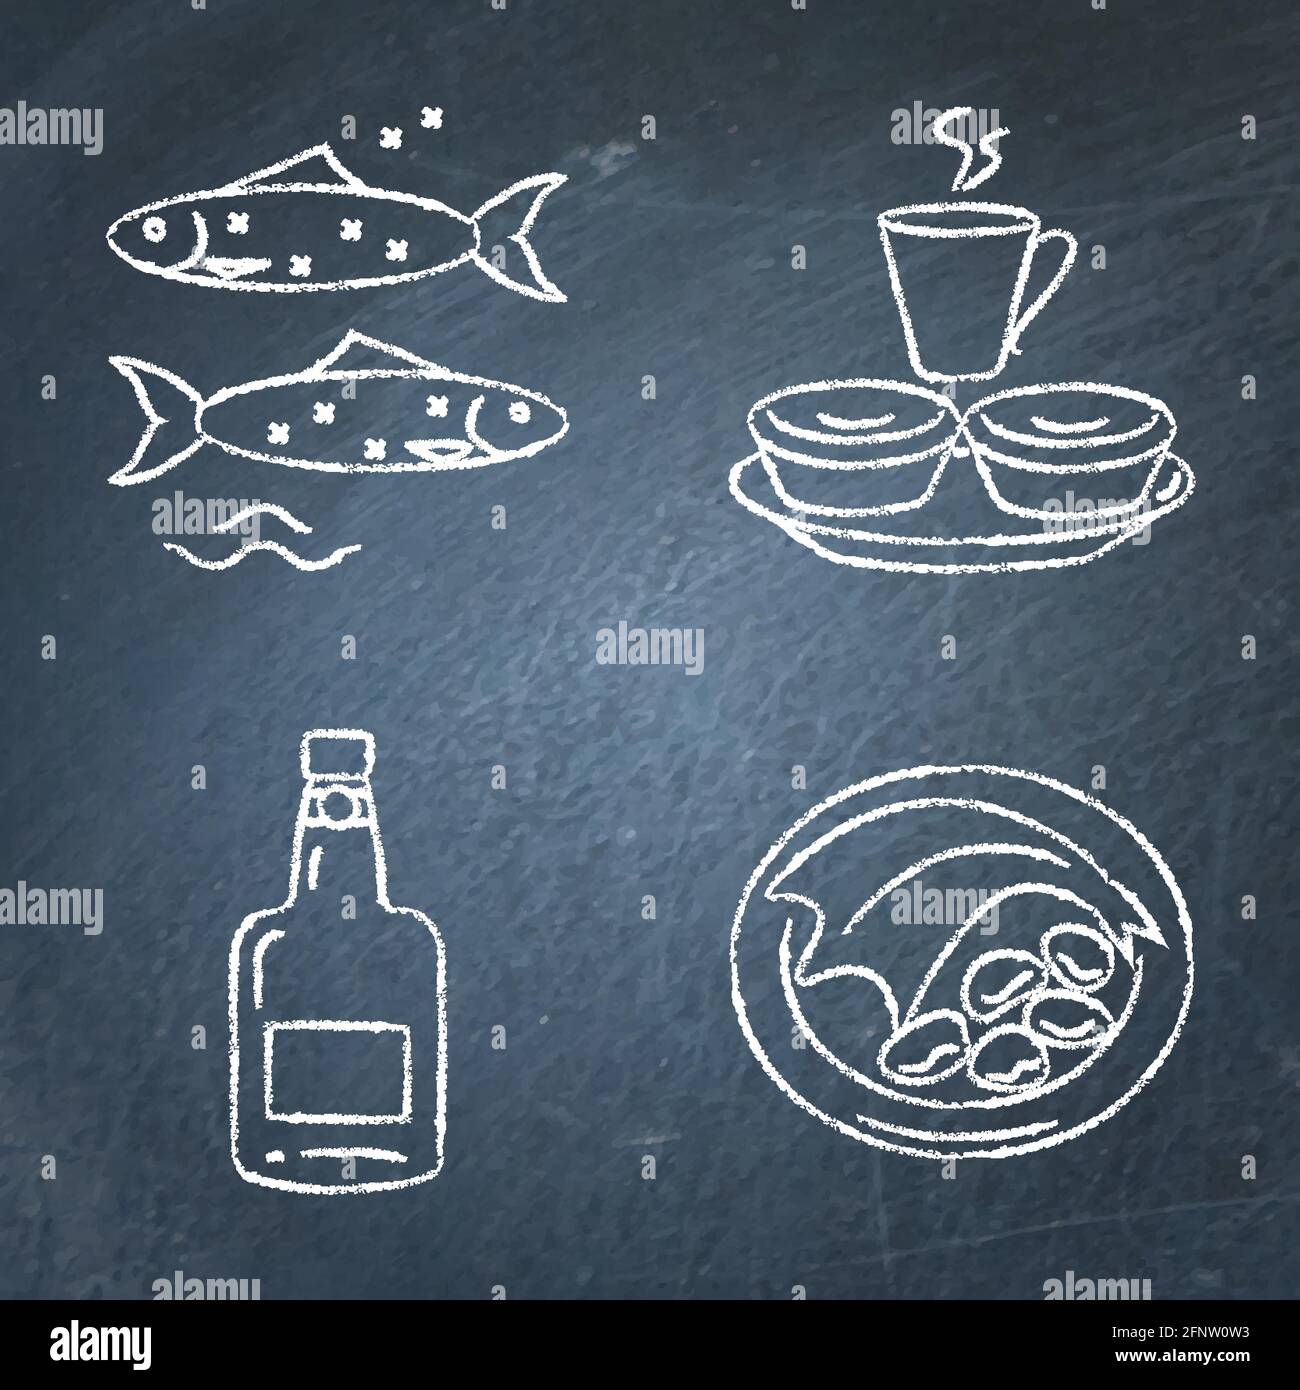 Collection d'icônes du Portugal sur tableau noir. Ensemble de symboles traditionnels de la cuisine, dont le vin de porto, le bacalu, les tartes pastel de nata et les sardines. Ven Illustration de Vecteur